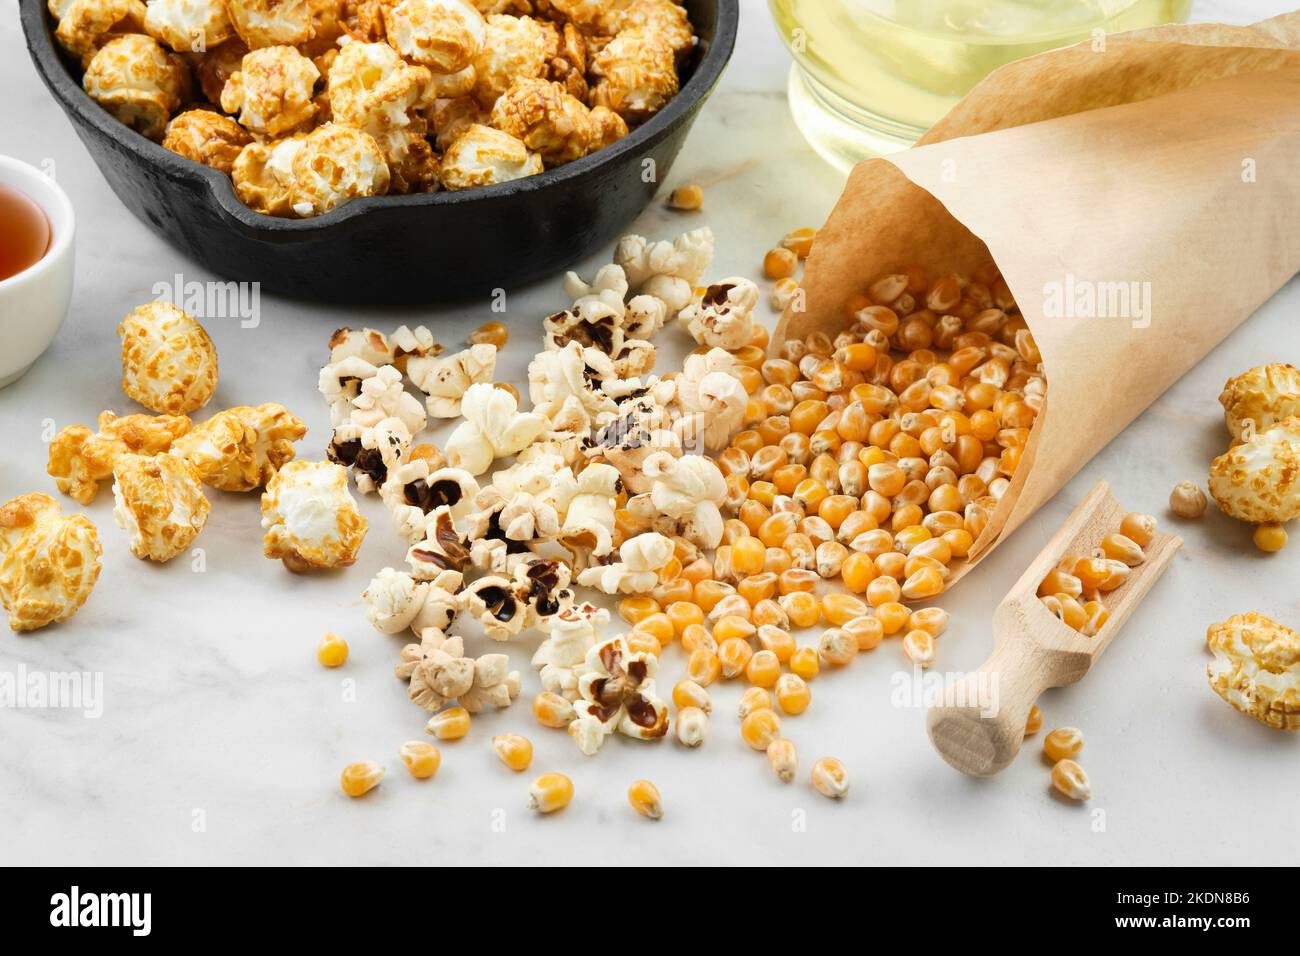 Pop-corn préparé dans une poêle, grains de maïs séchés, sauce caramel et bouteille d'huile sur une table de cuisine. Banque D'Images